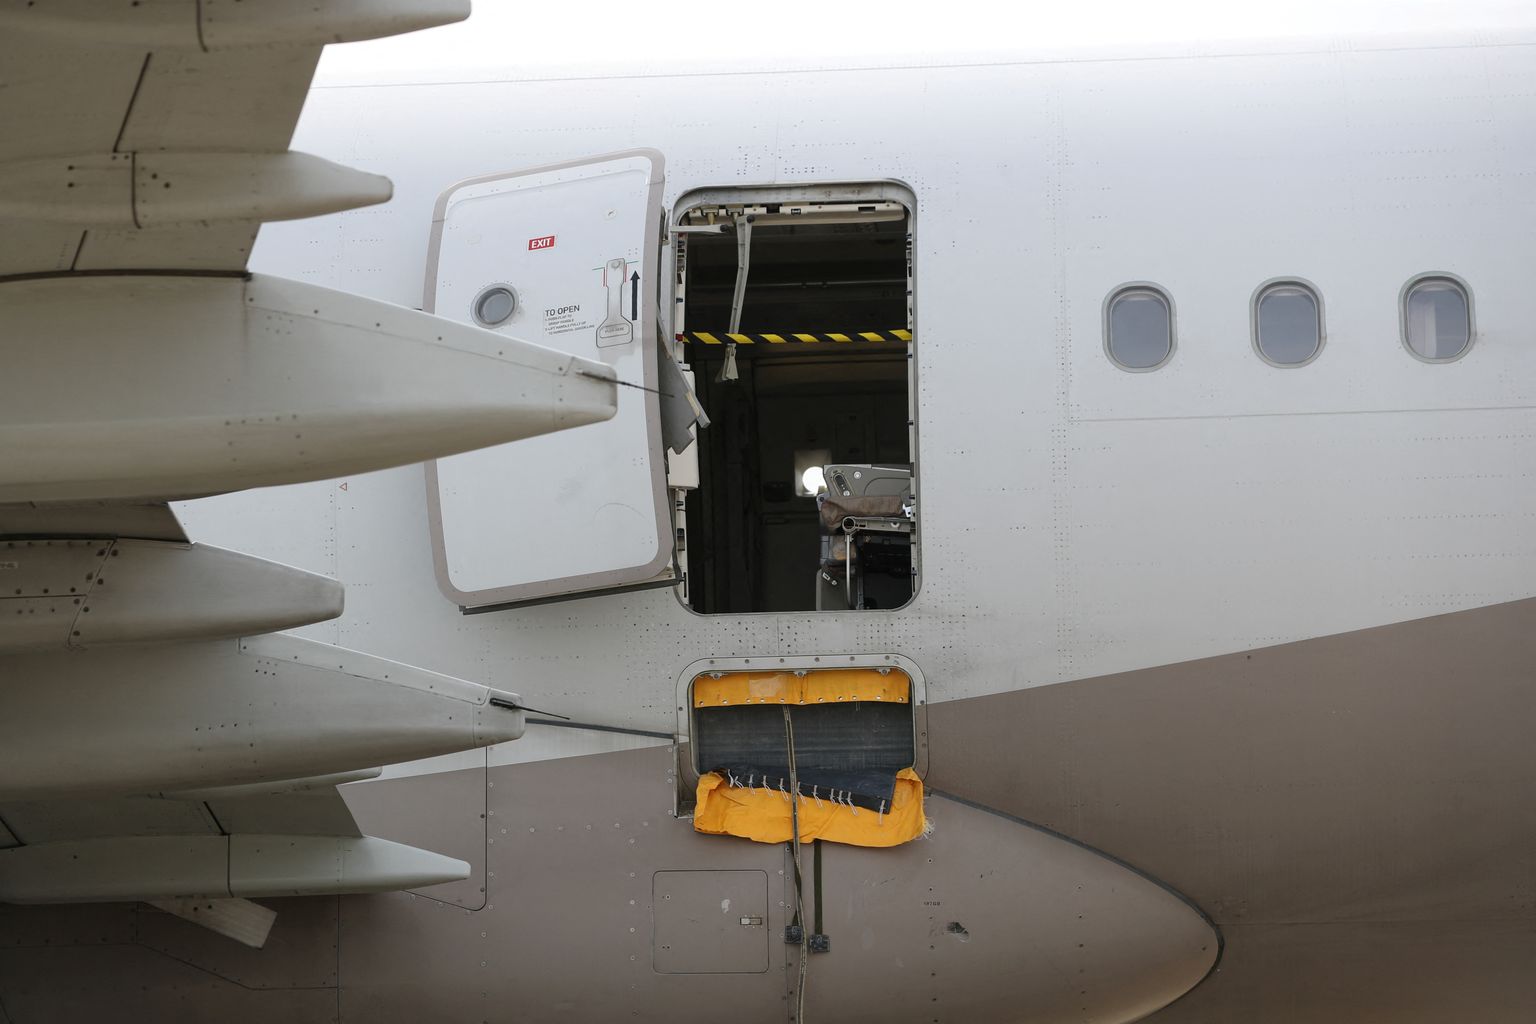 Asiana Airlines' Airbus A321 lennuk, kus reisija 26. mail õhus olles avariiväljapääsu avas.